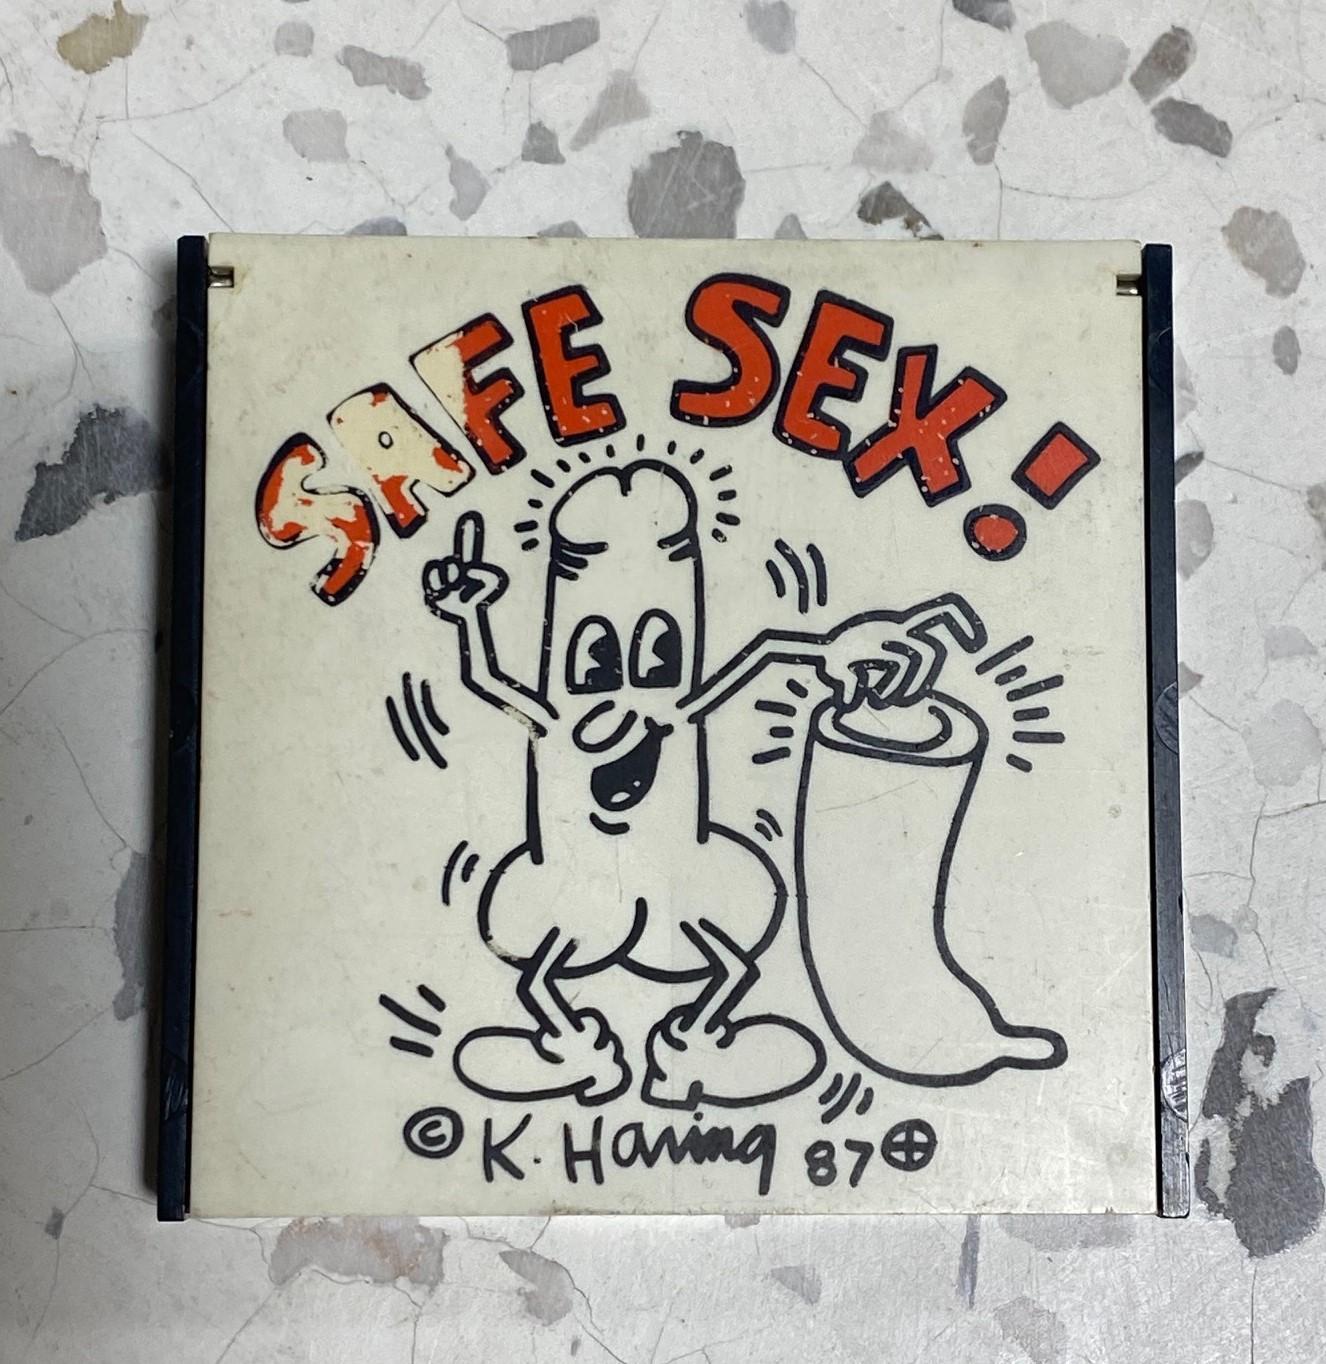 Eine seltene Keith Haring / New York City Pop Shop original 